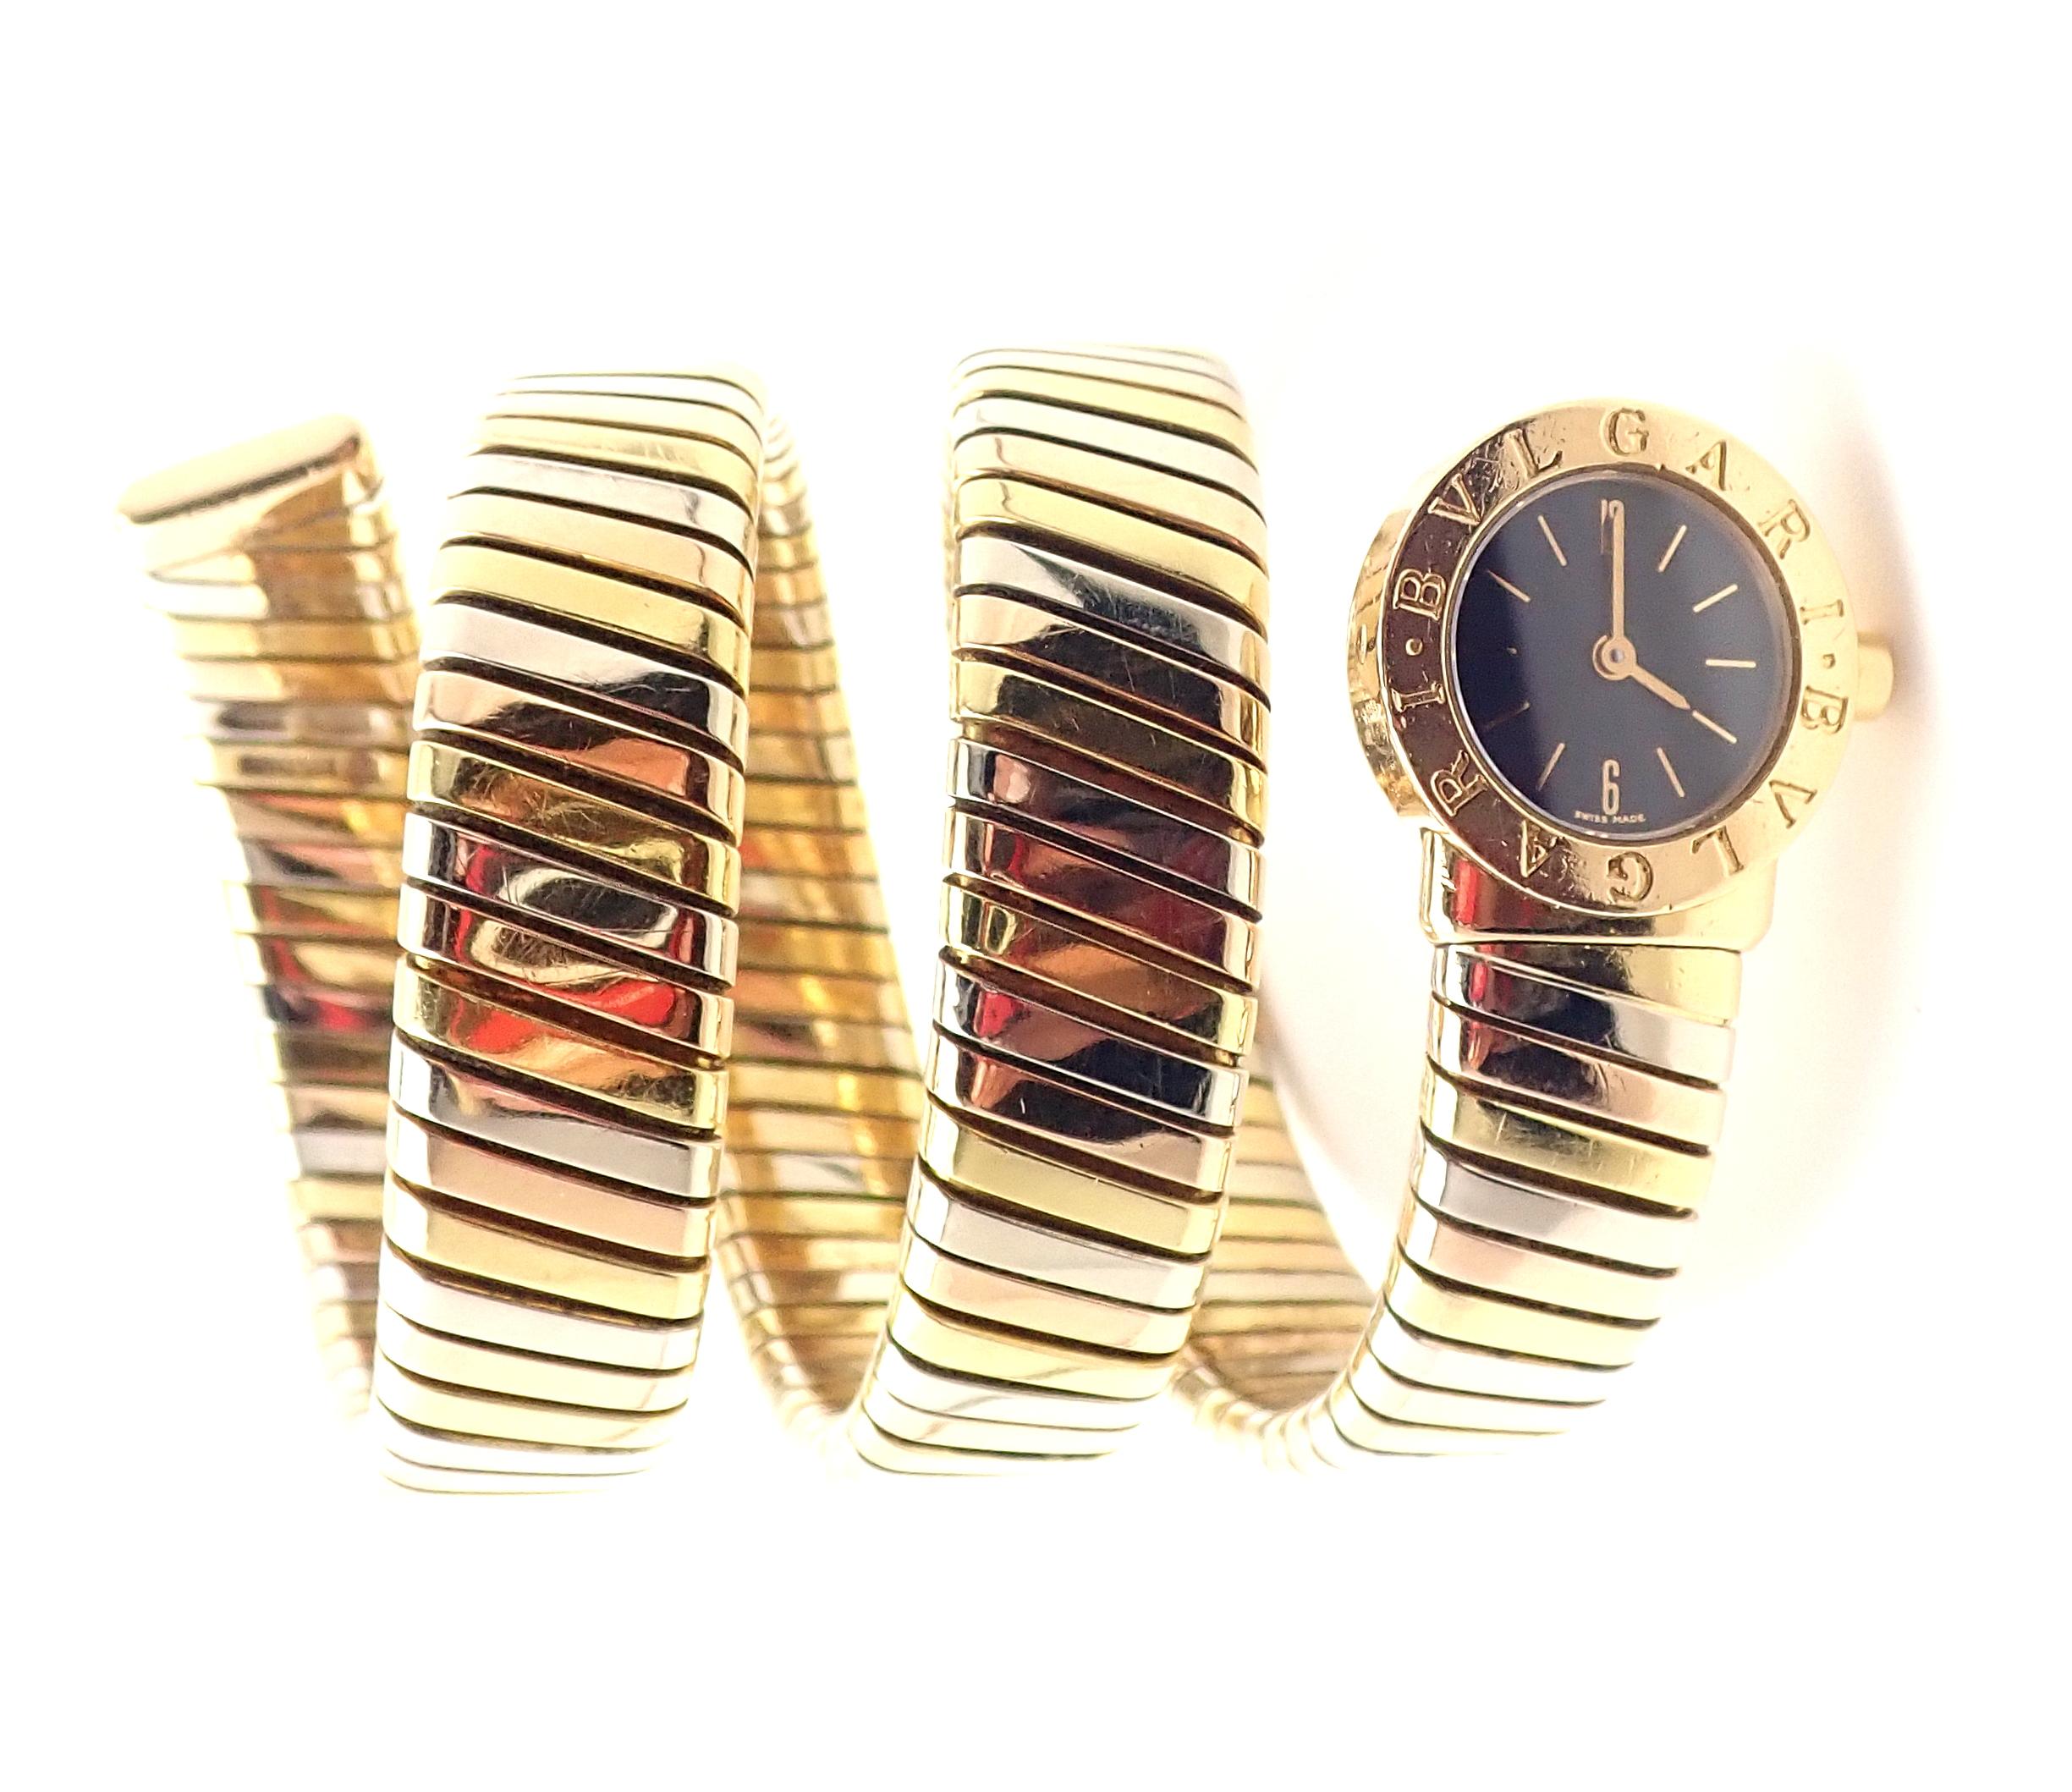 Bulgari lady's 18k tri-color gold Tubogas Serpent Snake bracelet watch. 
Details:
Model: BB191T
Movement Type: Quartz
Case Size: 3/4